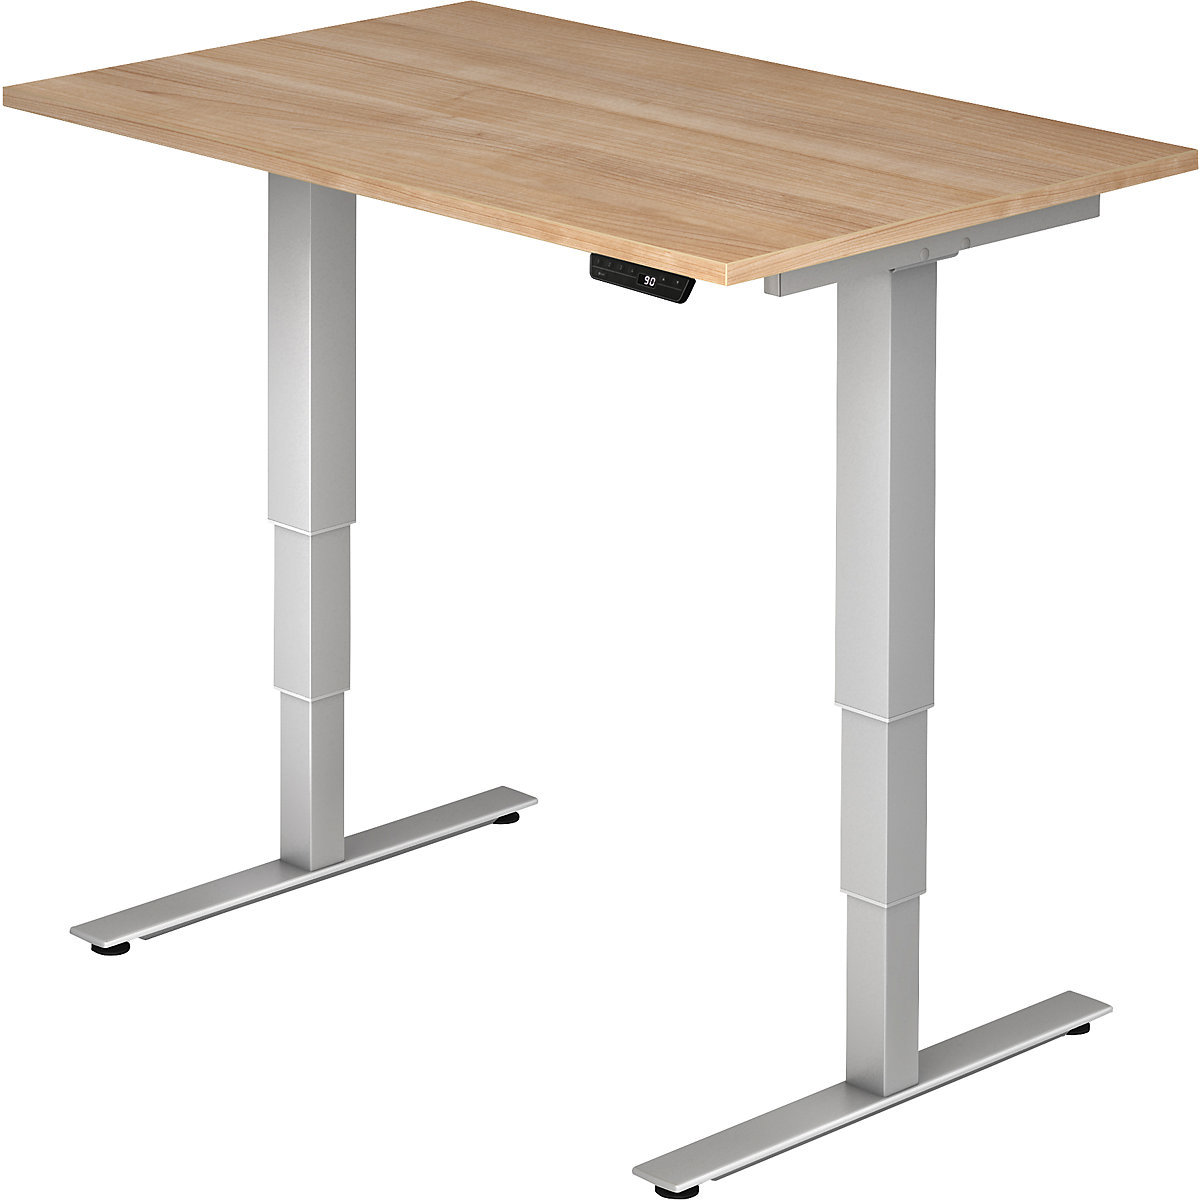 UPLINER-2.0 Stôl na písanie v stoji, elektricky výškovo prestaviteľný, podstavec s nohou v tvare T, šírka 1200 mm, vzor orech